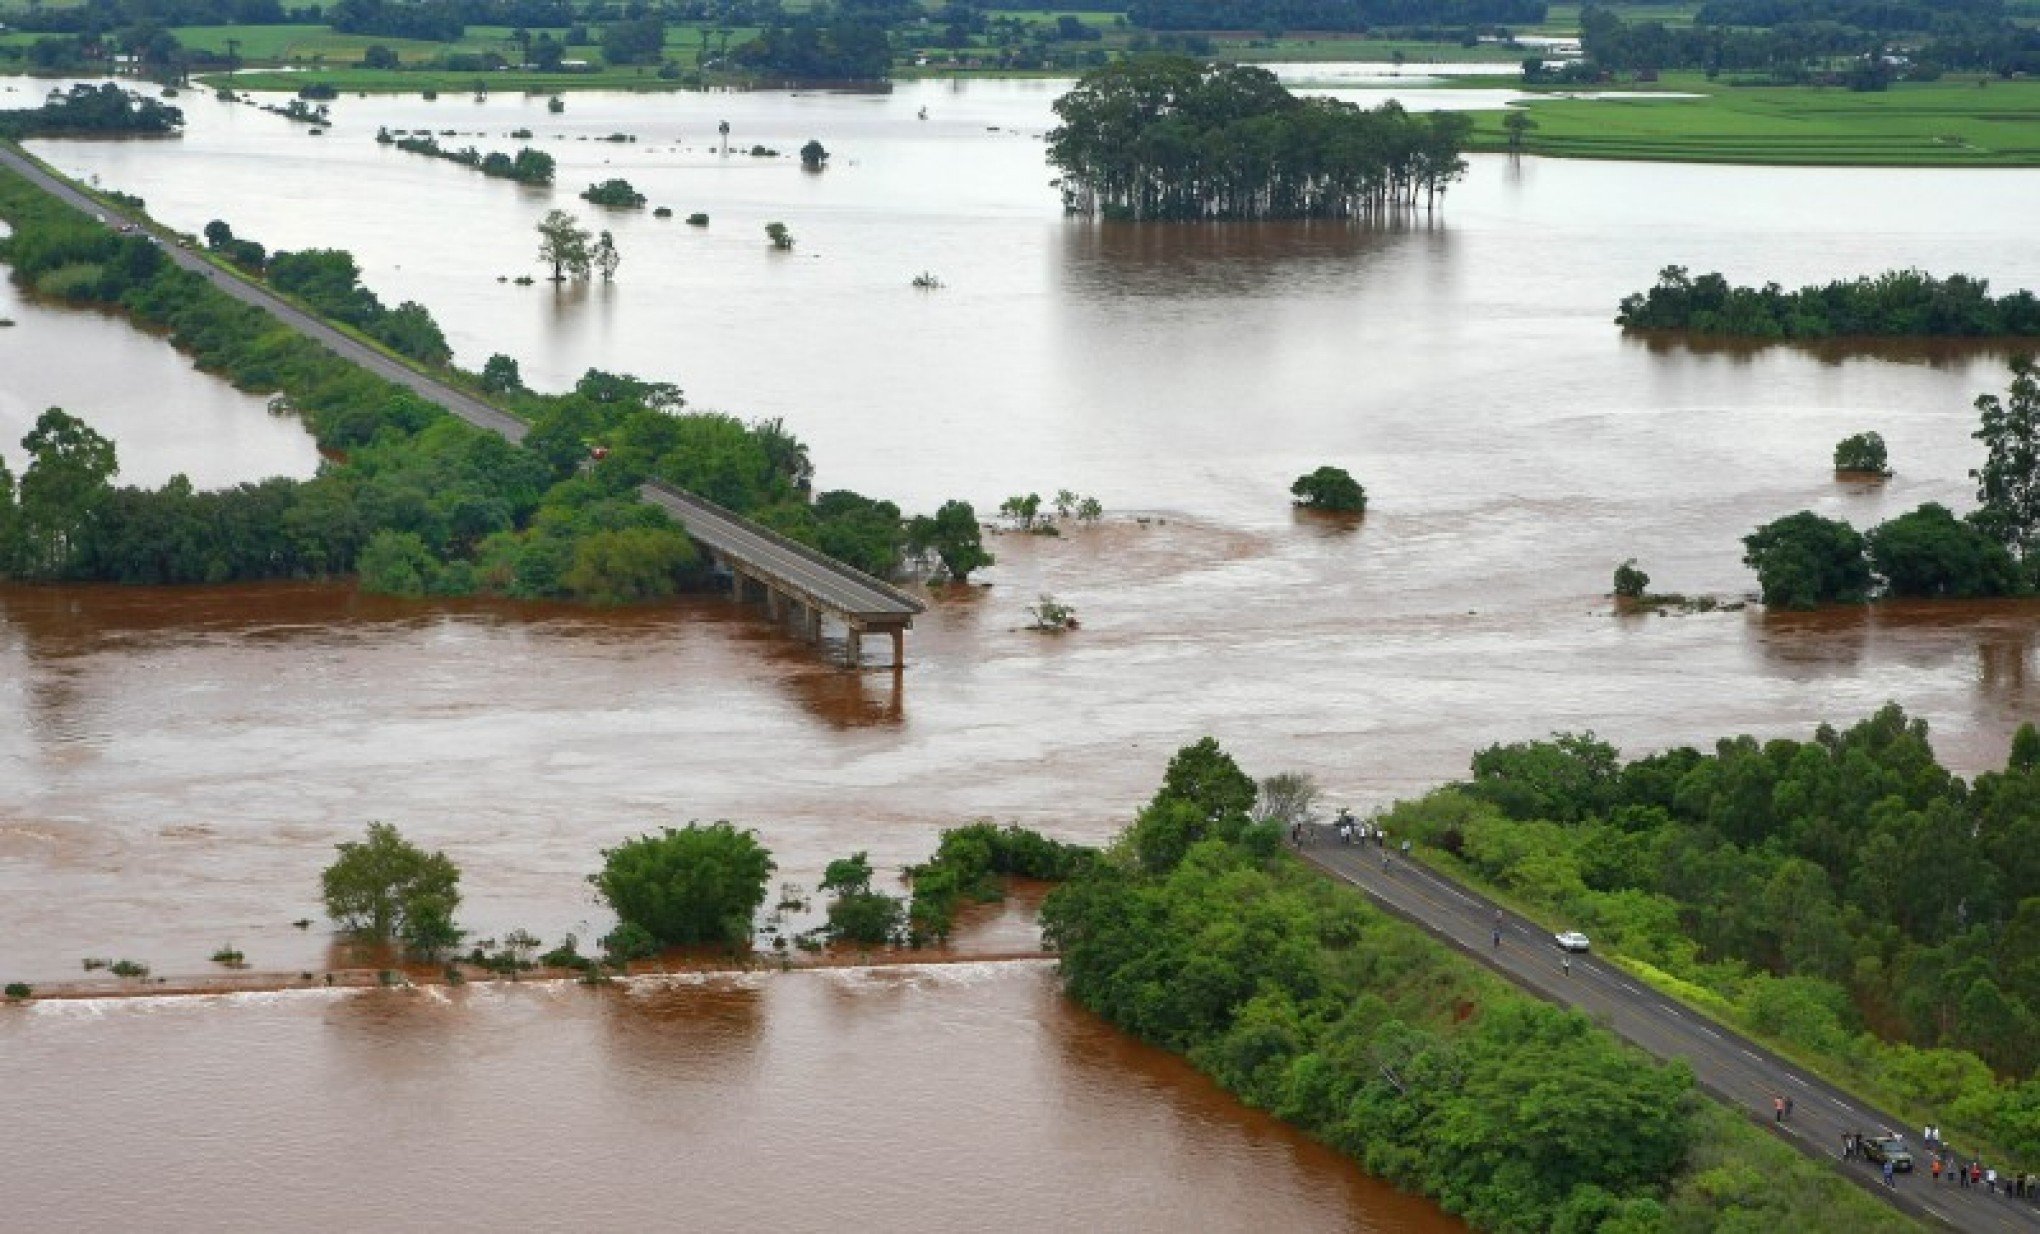 TEMPESTADE: Condição climática prevista para esta semana tem semelhança com 2010, quando enchente derrubou ponte em Agudo